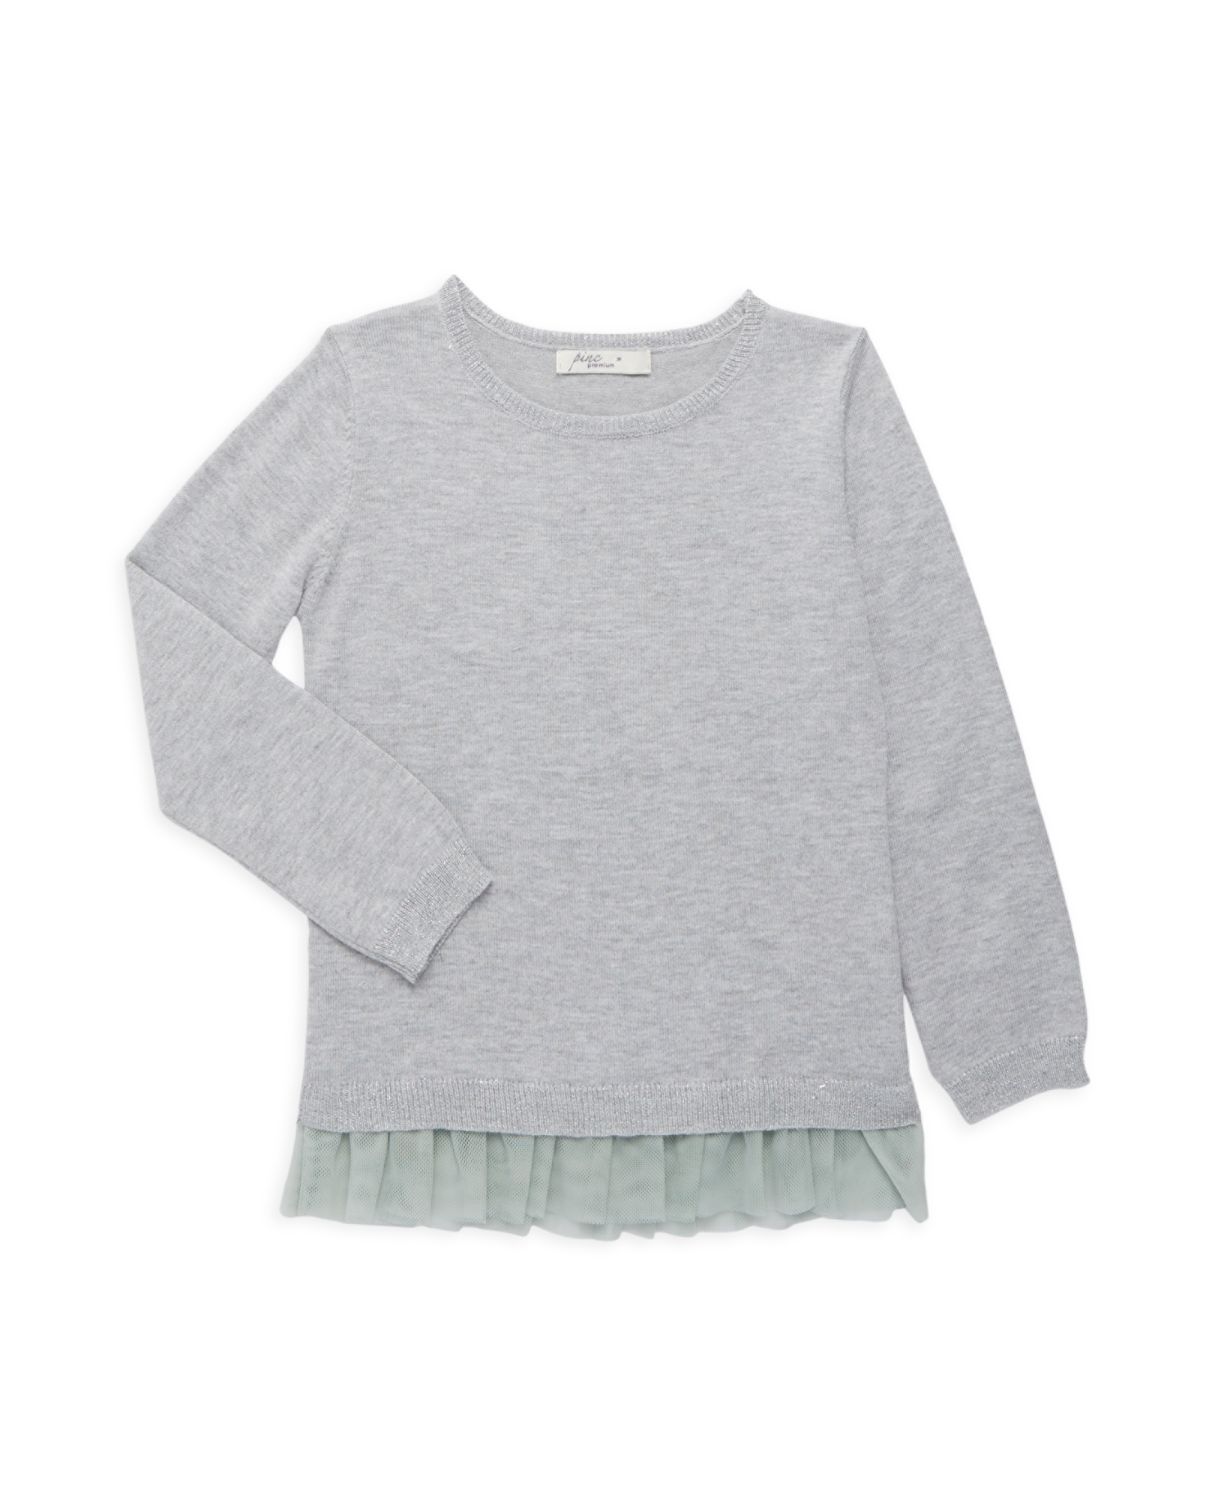 Шерстяной пуловер для маленькой девочки с сетчатой отделкой Pinc Premium